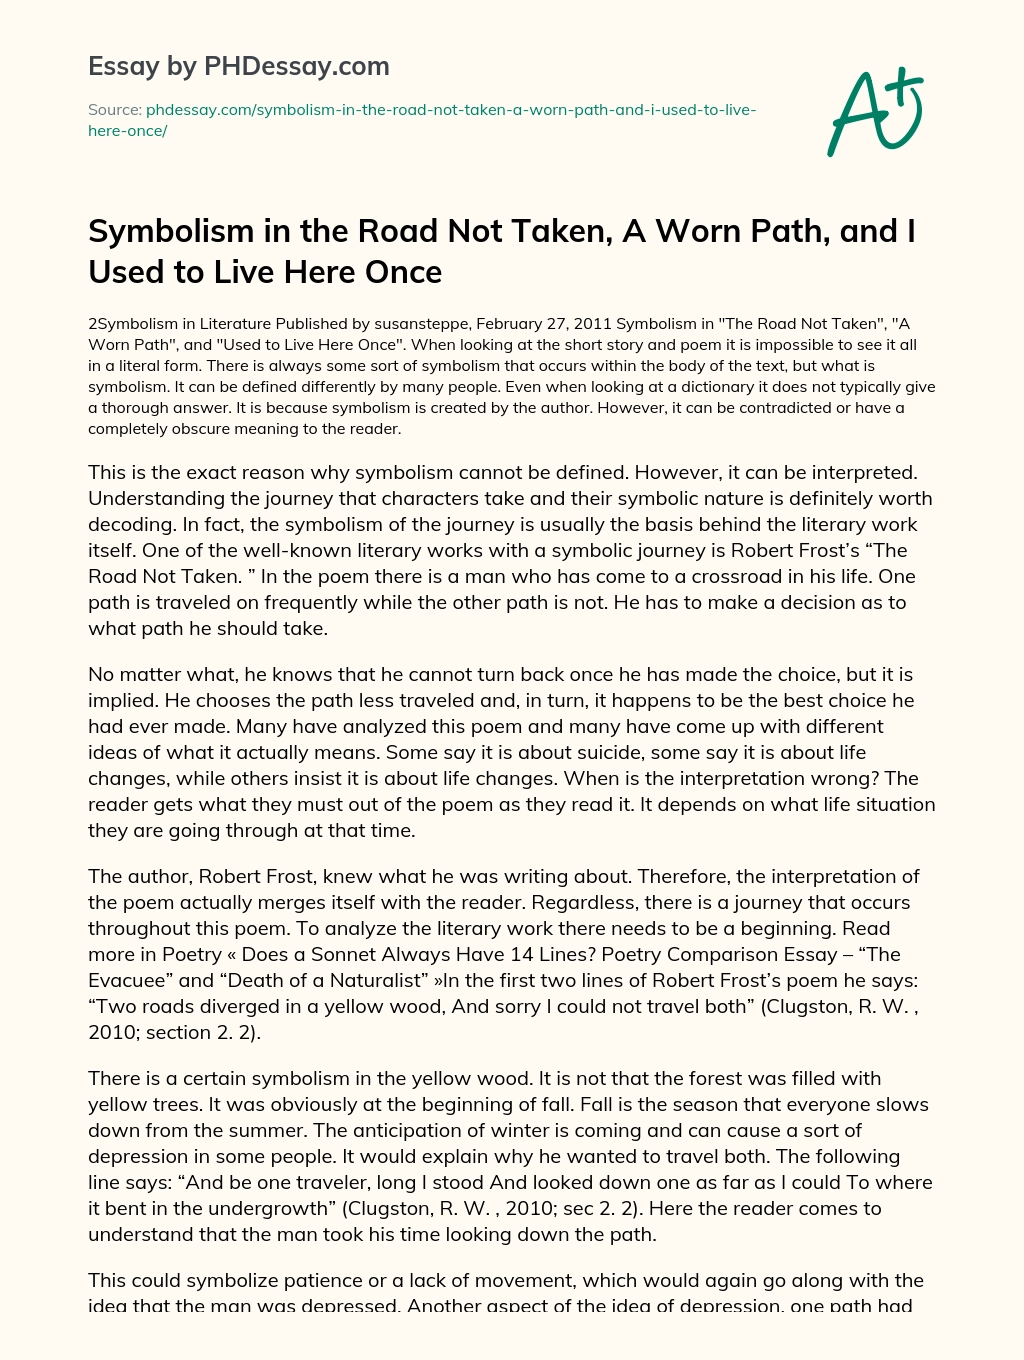 a worn path symbolism essay